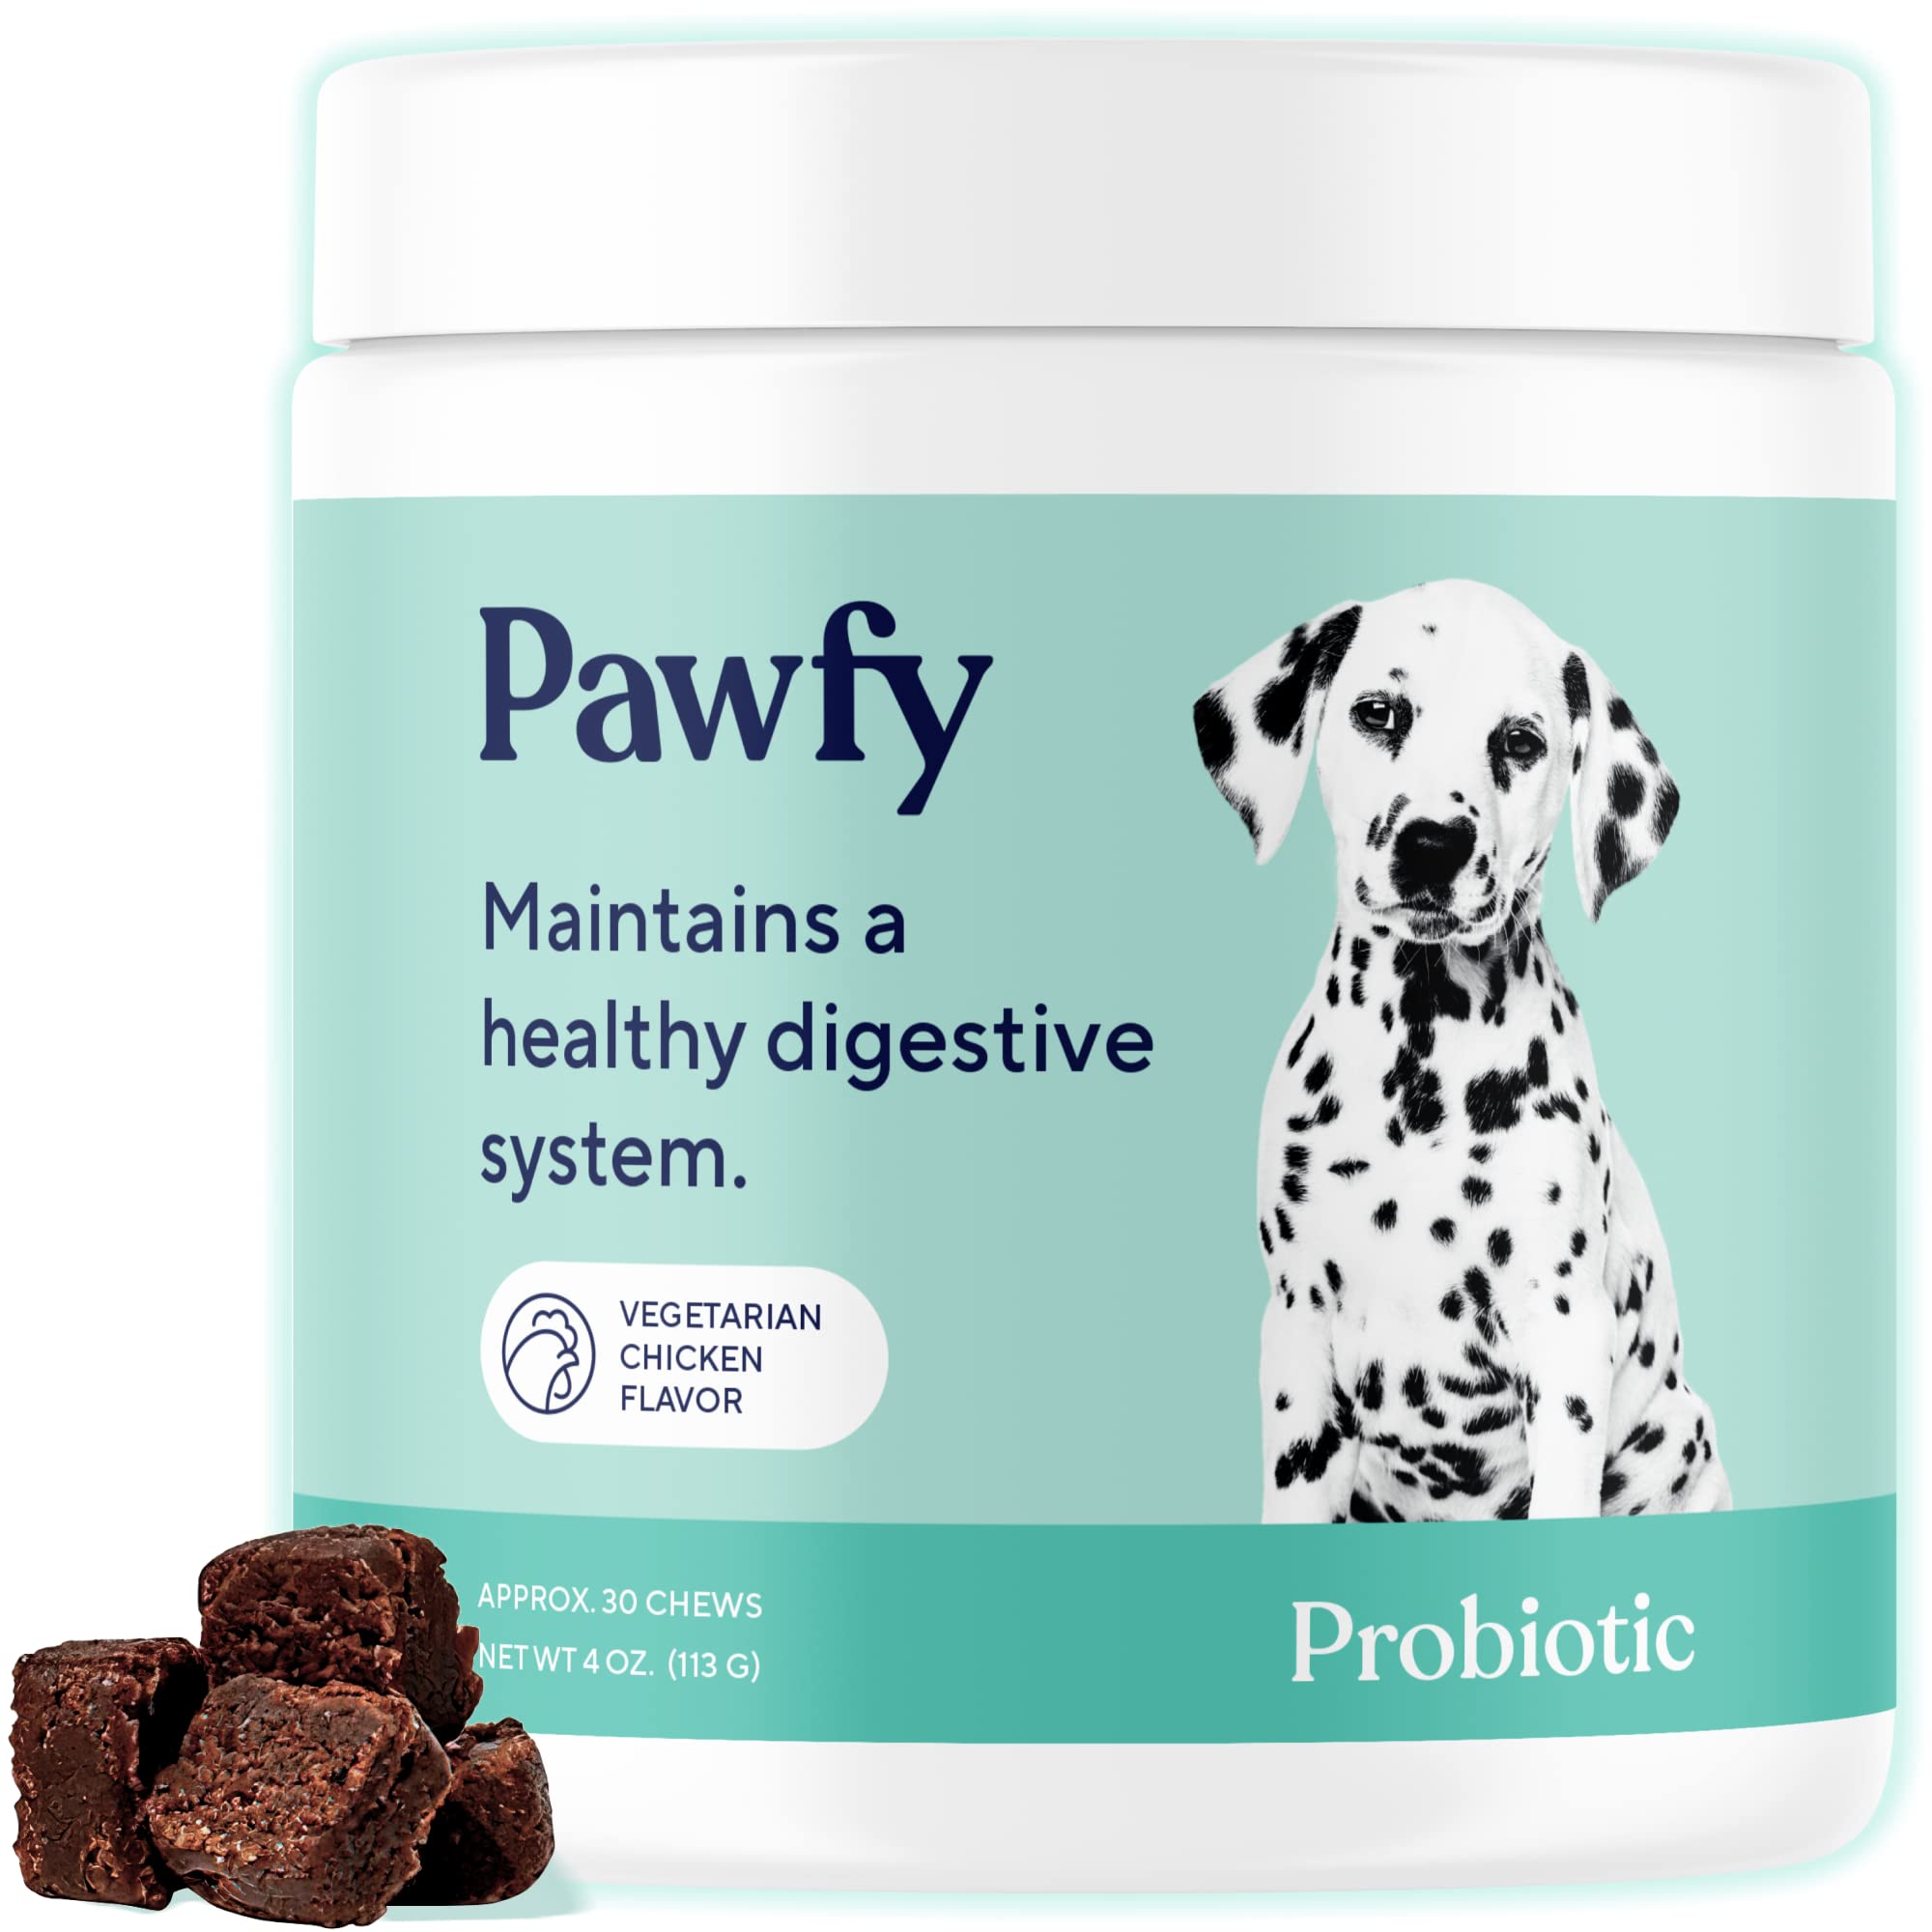 Pawfy Probiotic